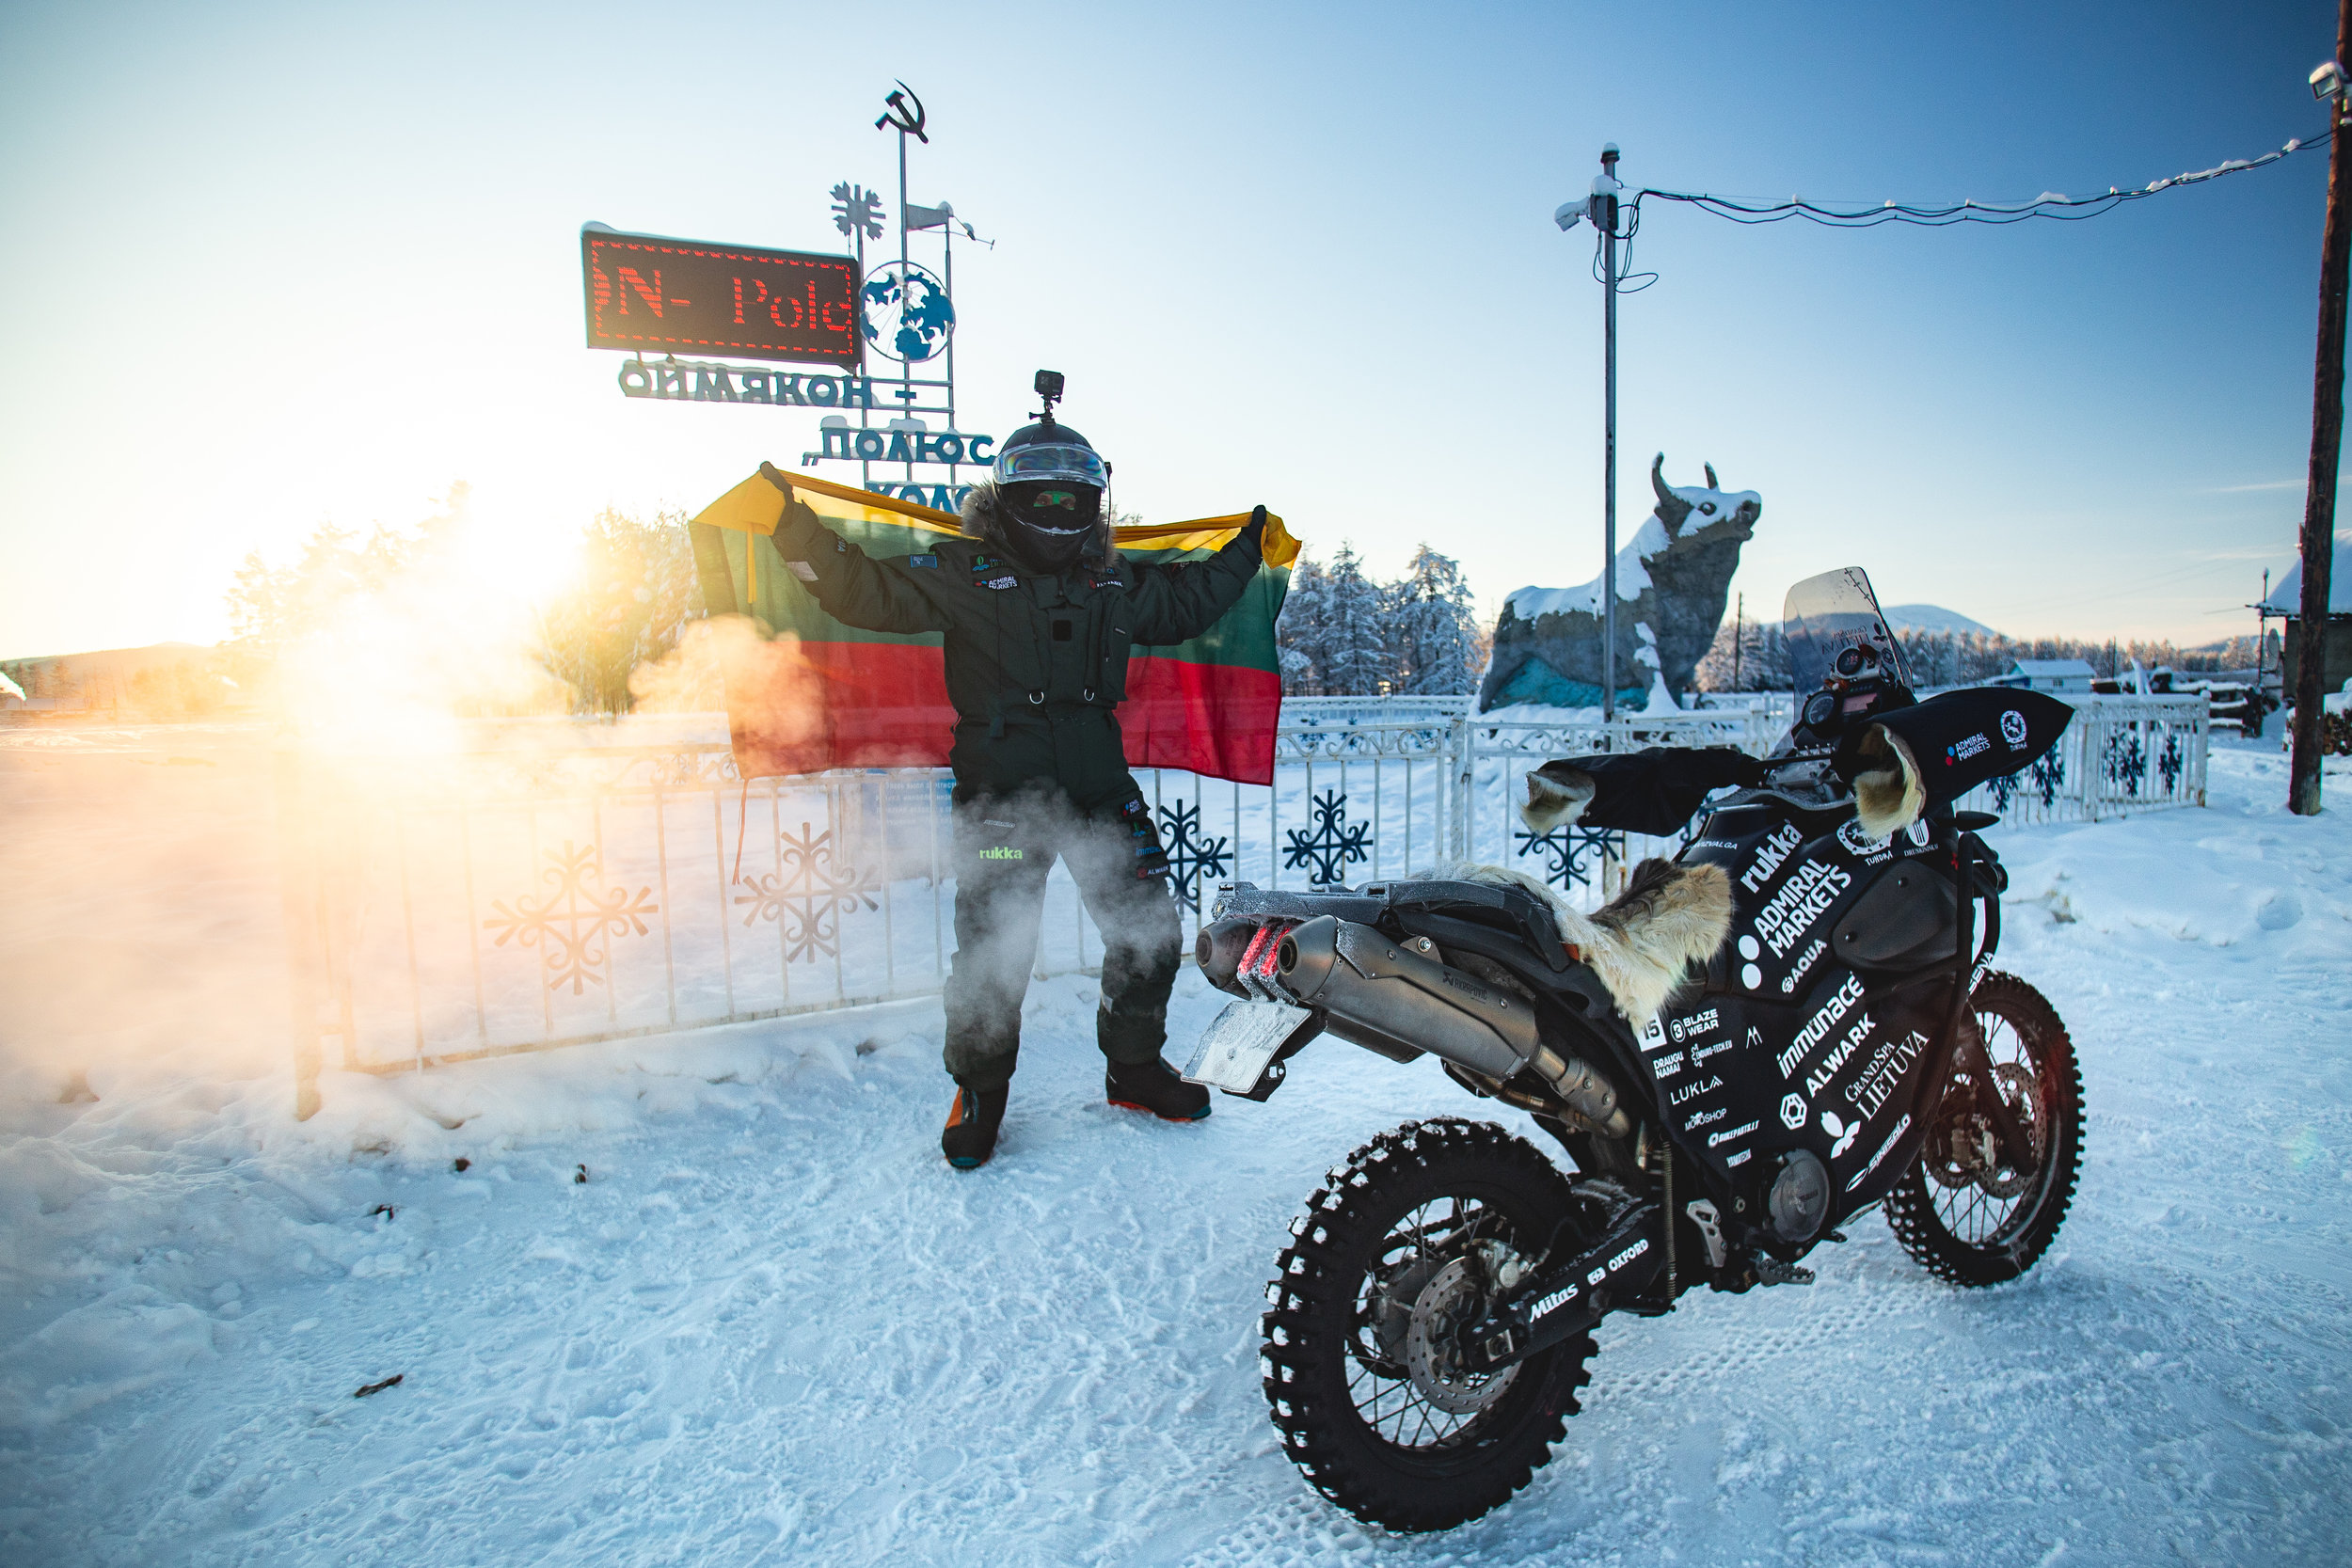 Karolis-Mieliauskas-coldest-ride-adventure-rider-radio-motorcycle-podcast-9.jpg